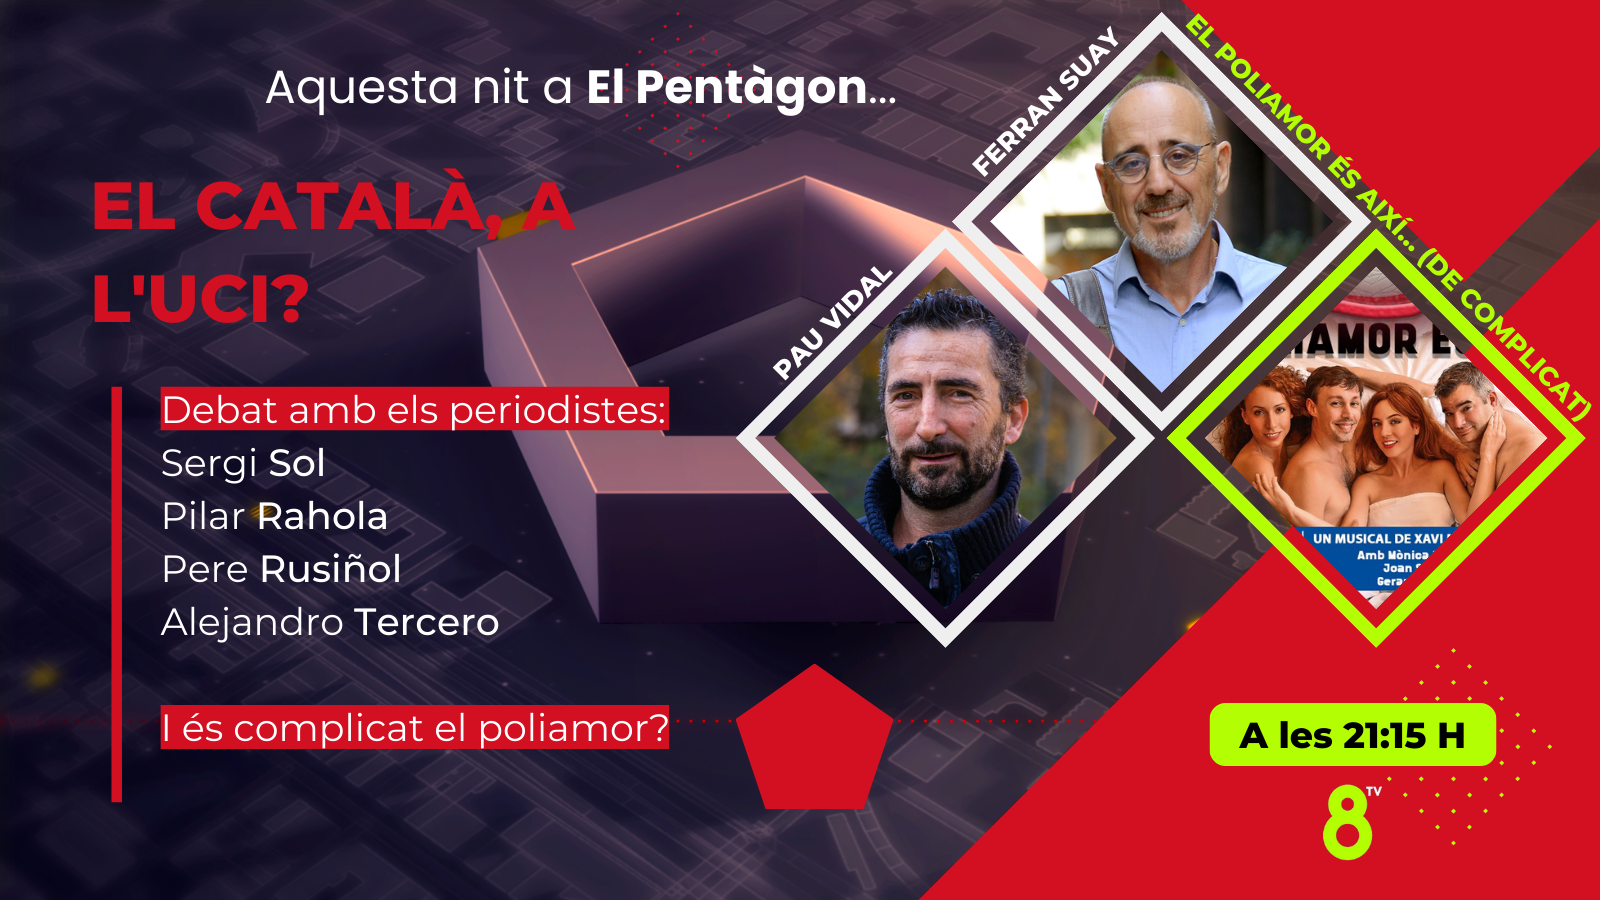 07/11/2022 - El català, a l'UCI? Amb el filòleg Pau Vidal i el president del Taller per la llengua, Ferran Suay